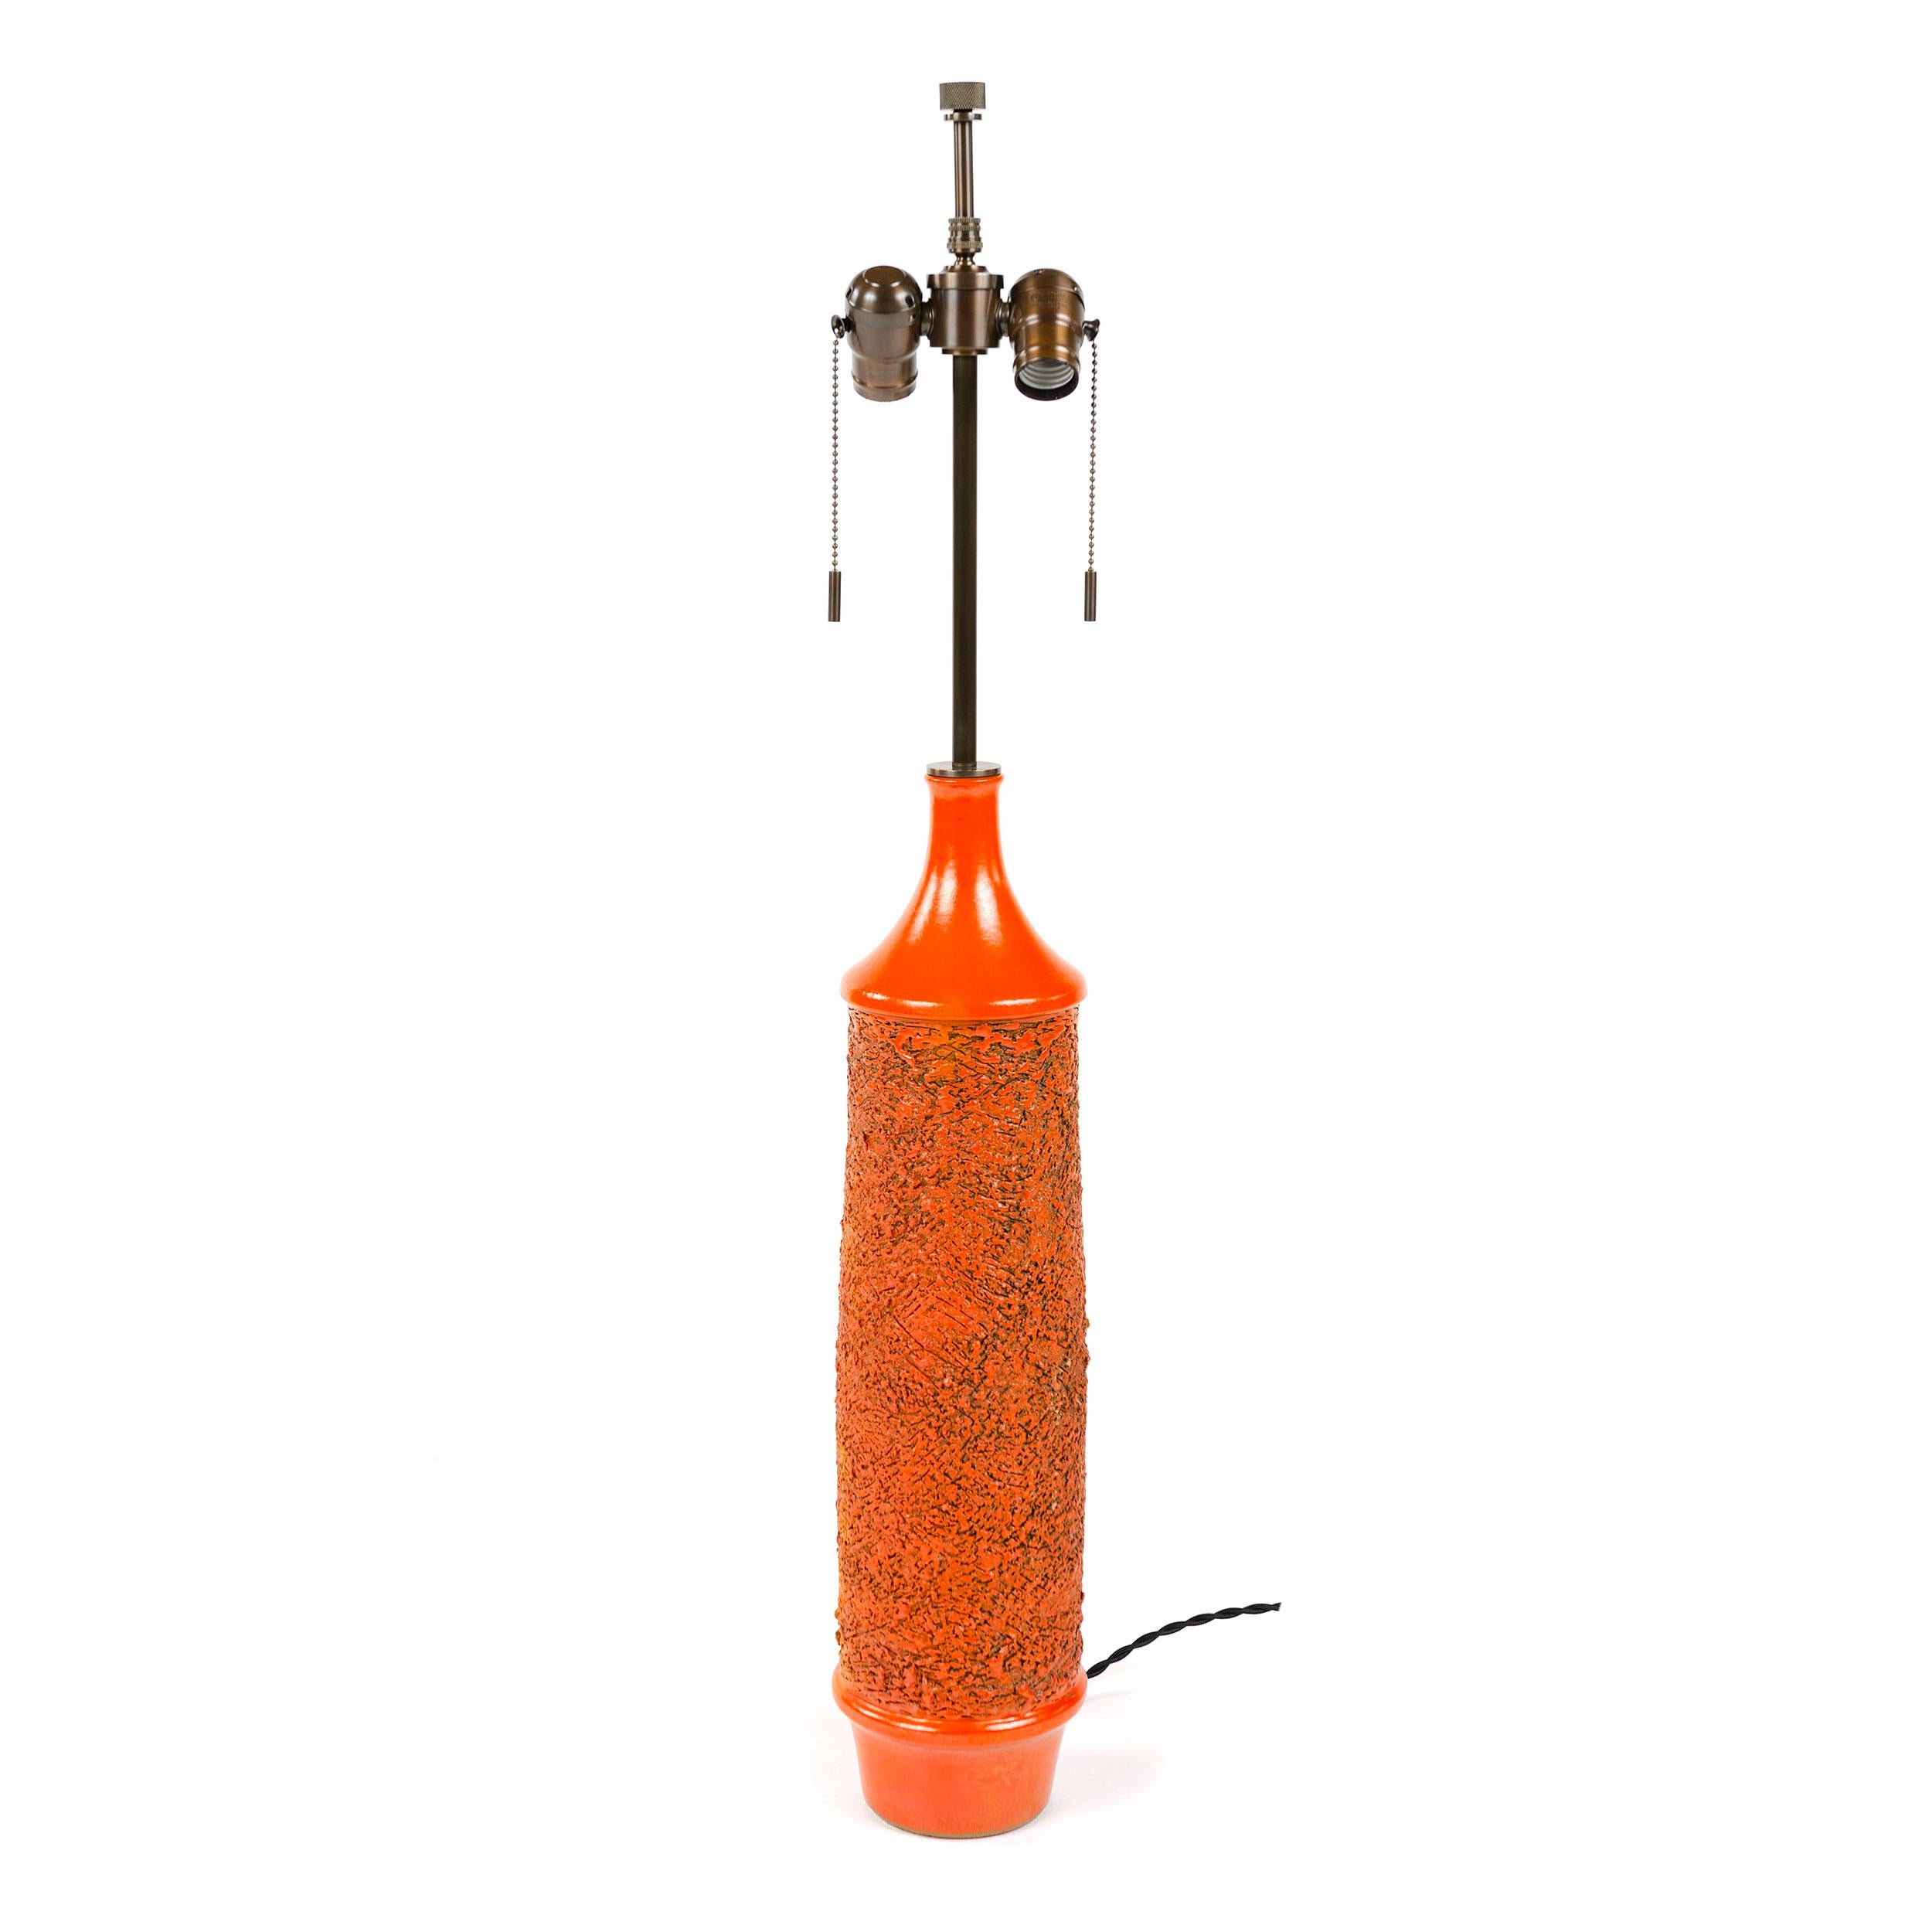 Lampe de table en céramique de forme cylindrique, tournée à la main, présentant une glaçure rouge-orange riche et brillante et un décor de sgraffites encerclant et profondément texturé, conçu en 1969 par Lee Rosen pour la série 3300. Au moment de la